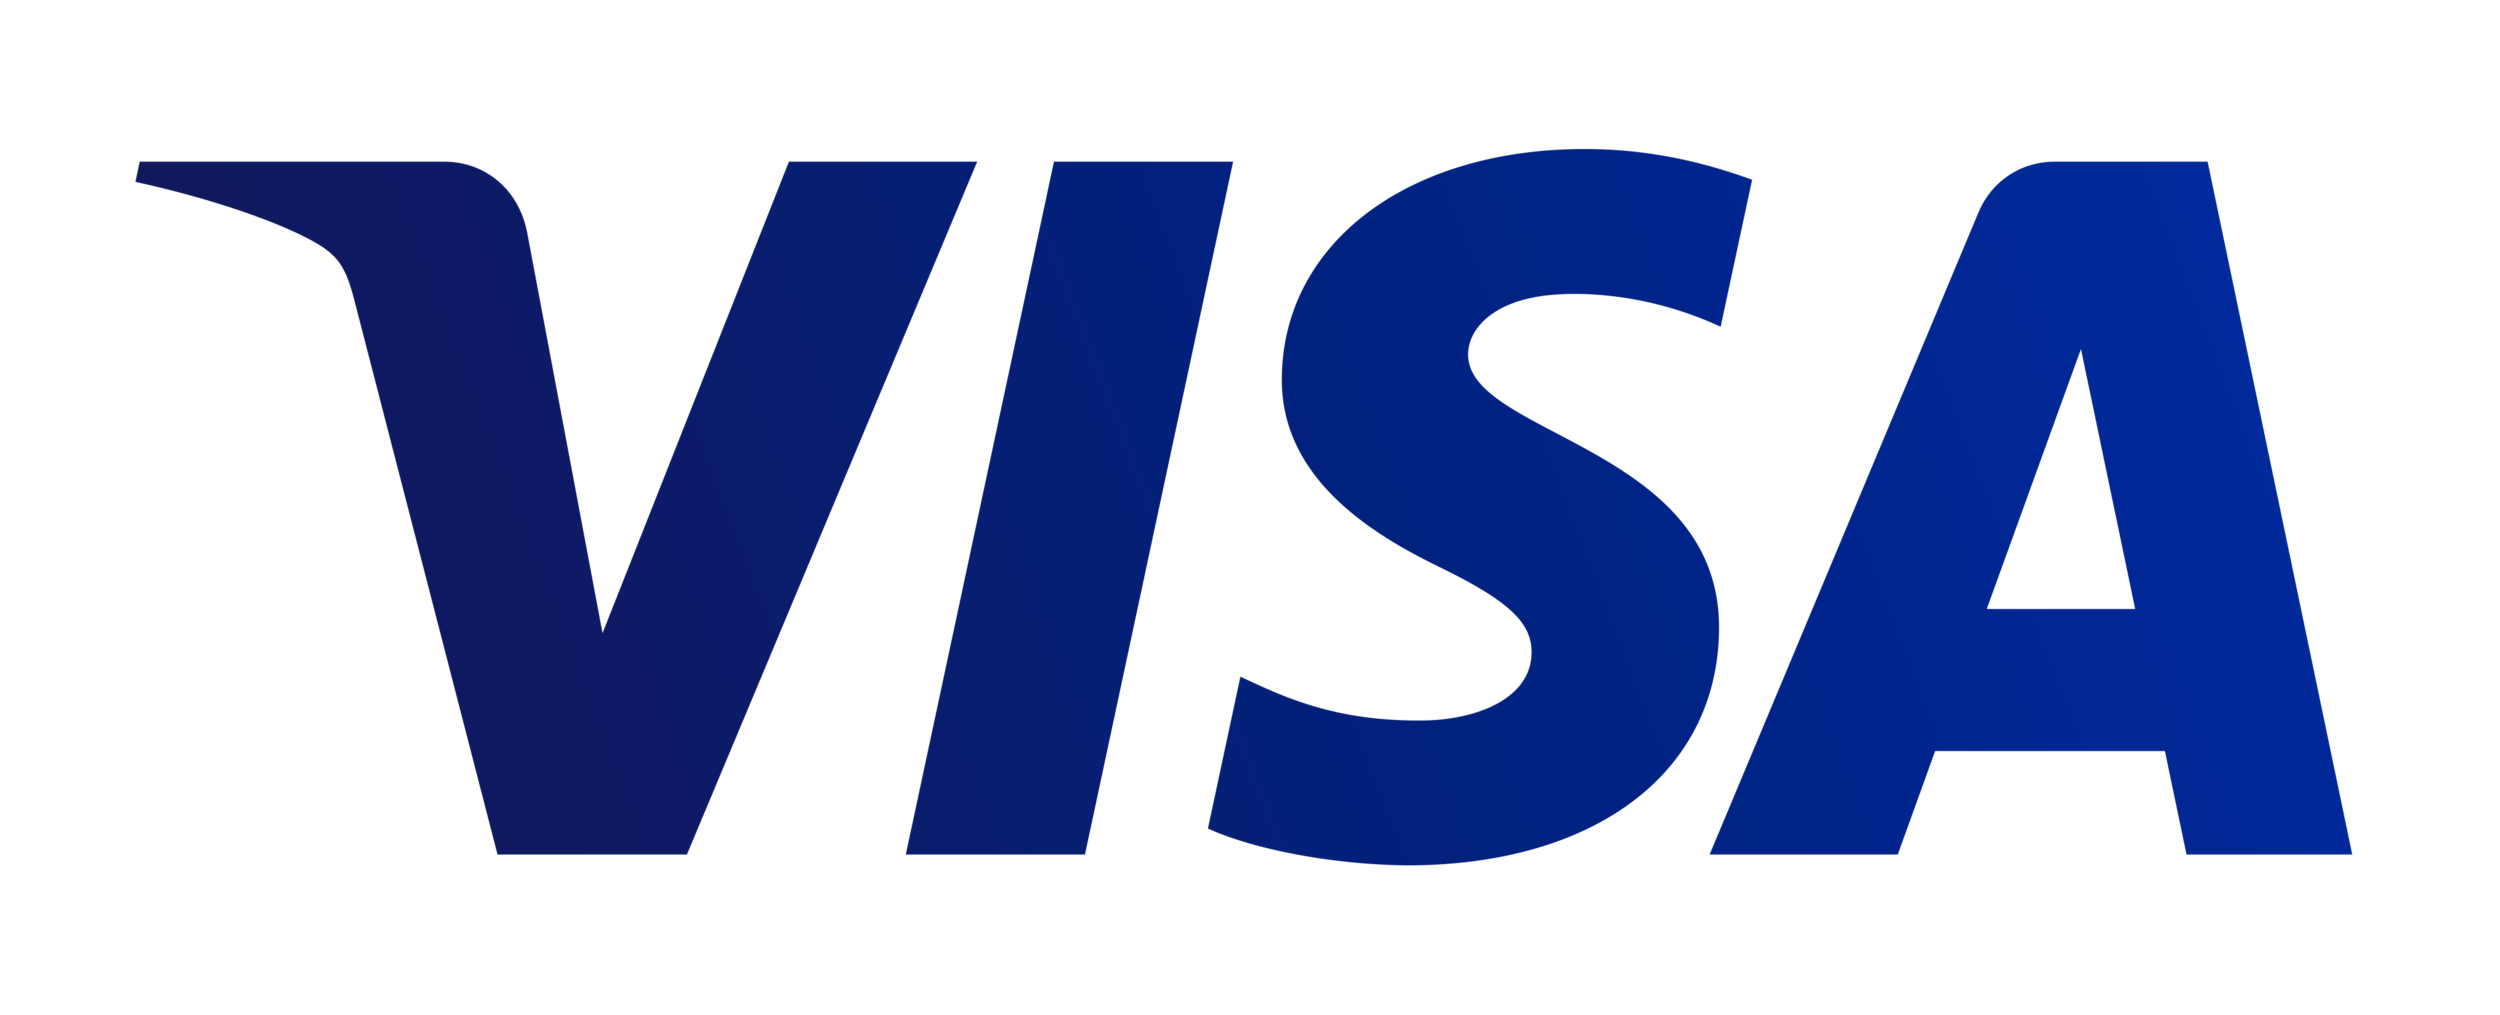 Visa_2.png